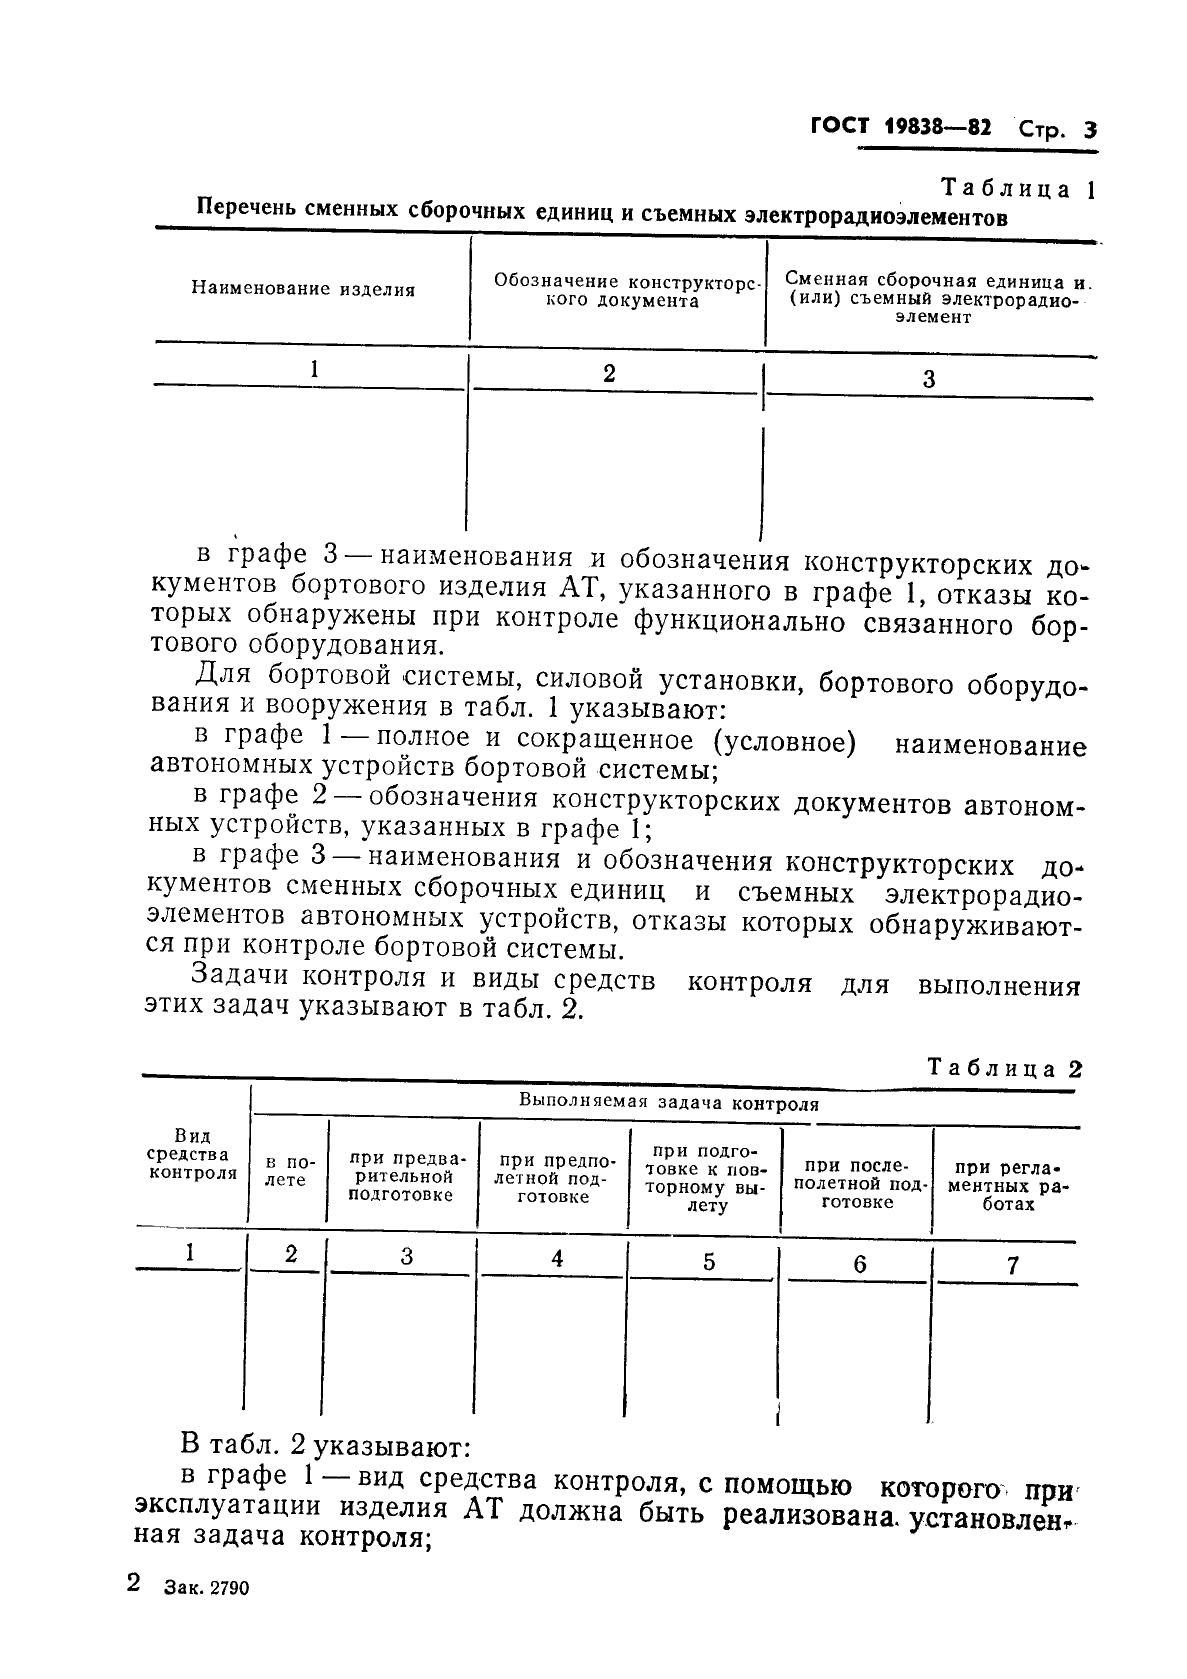 ГОСТ 19838-82 Характеристика контролепригодности изделий авиационной техники. Правила изложения и оформления (фото 4 из 21)